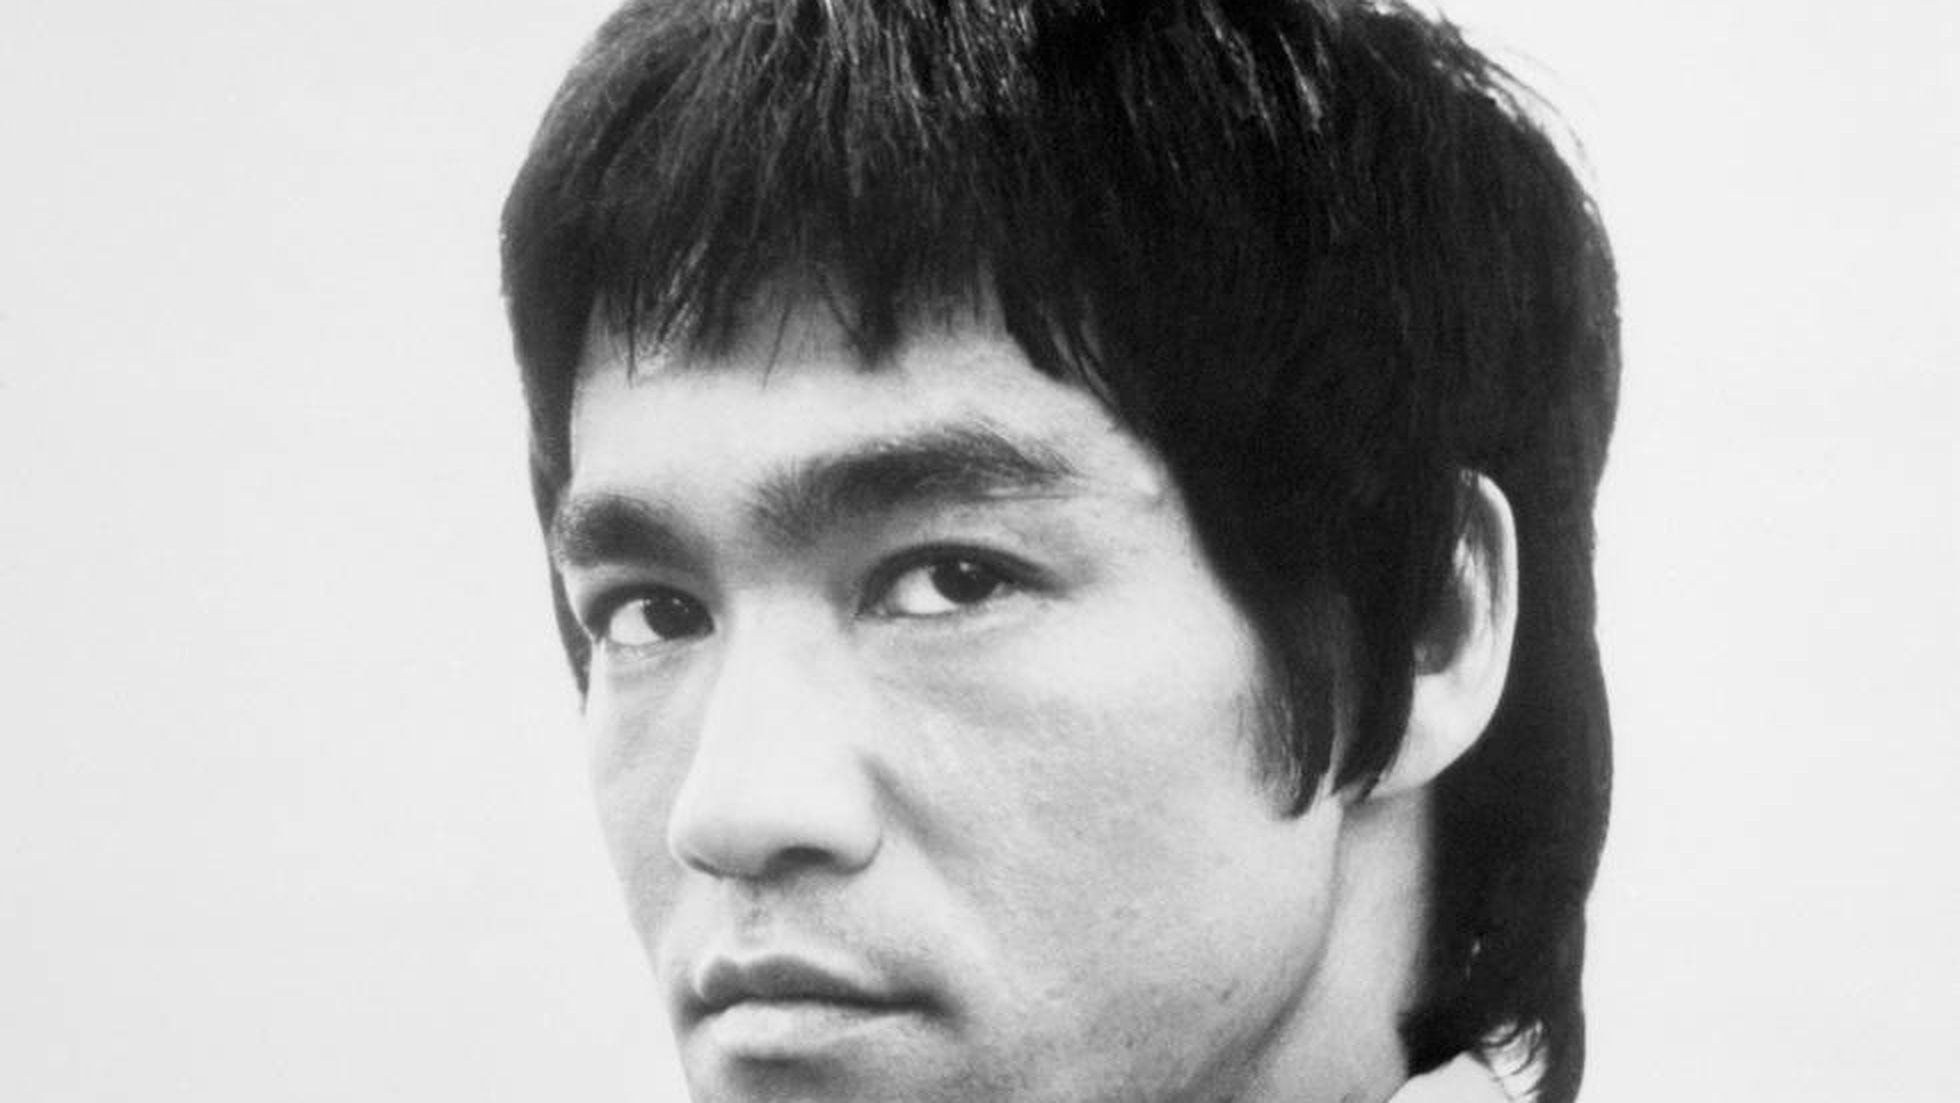 El misterio sobre la muerte de Bruce Lee sigue vivo | ICON | EL PAÍS